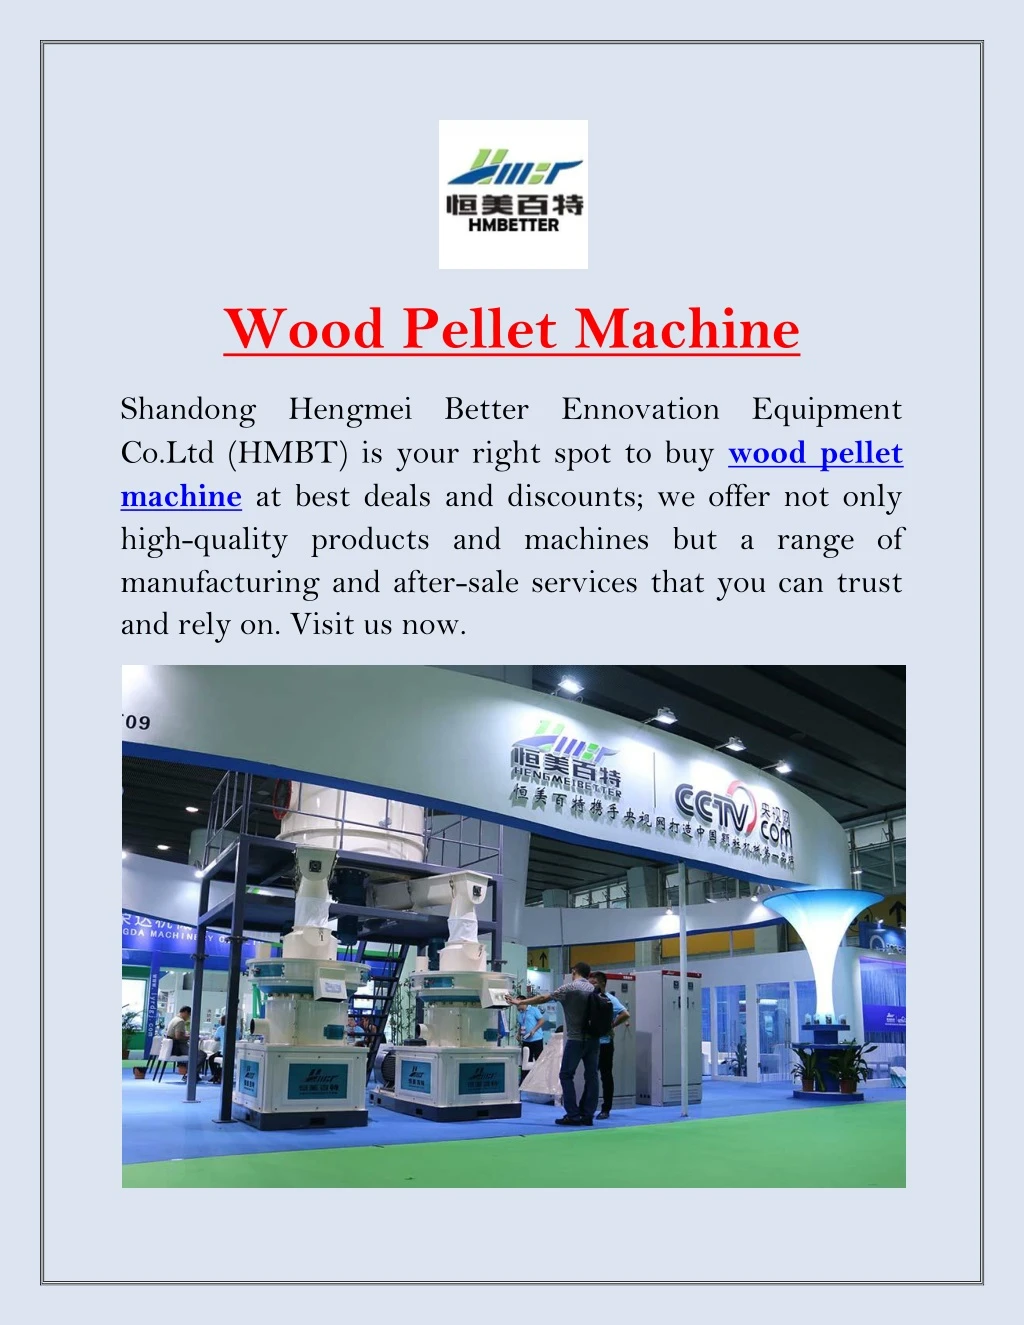 wood pellet machine